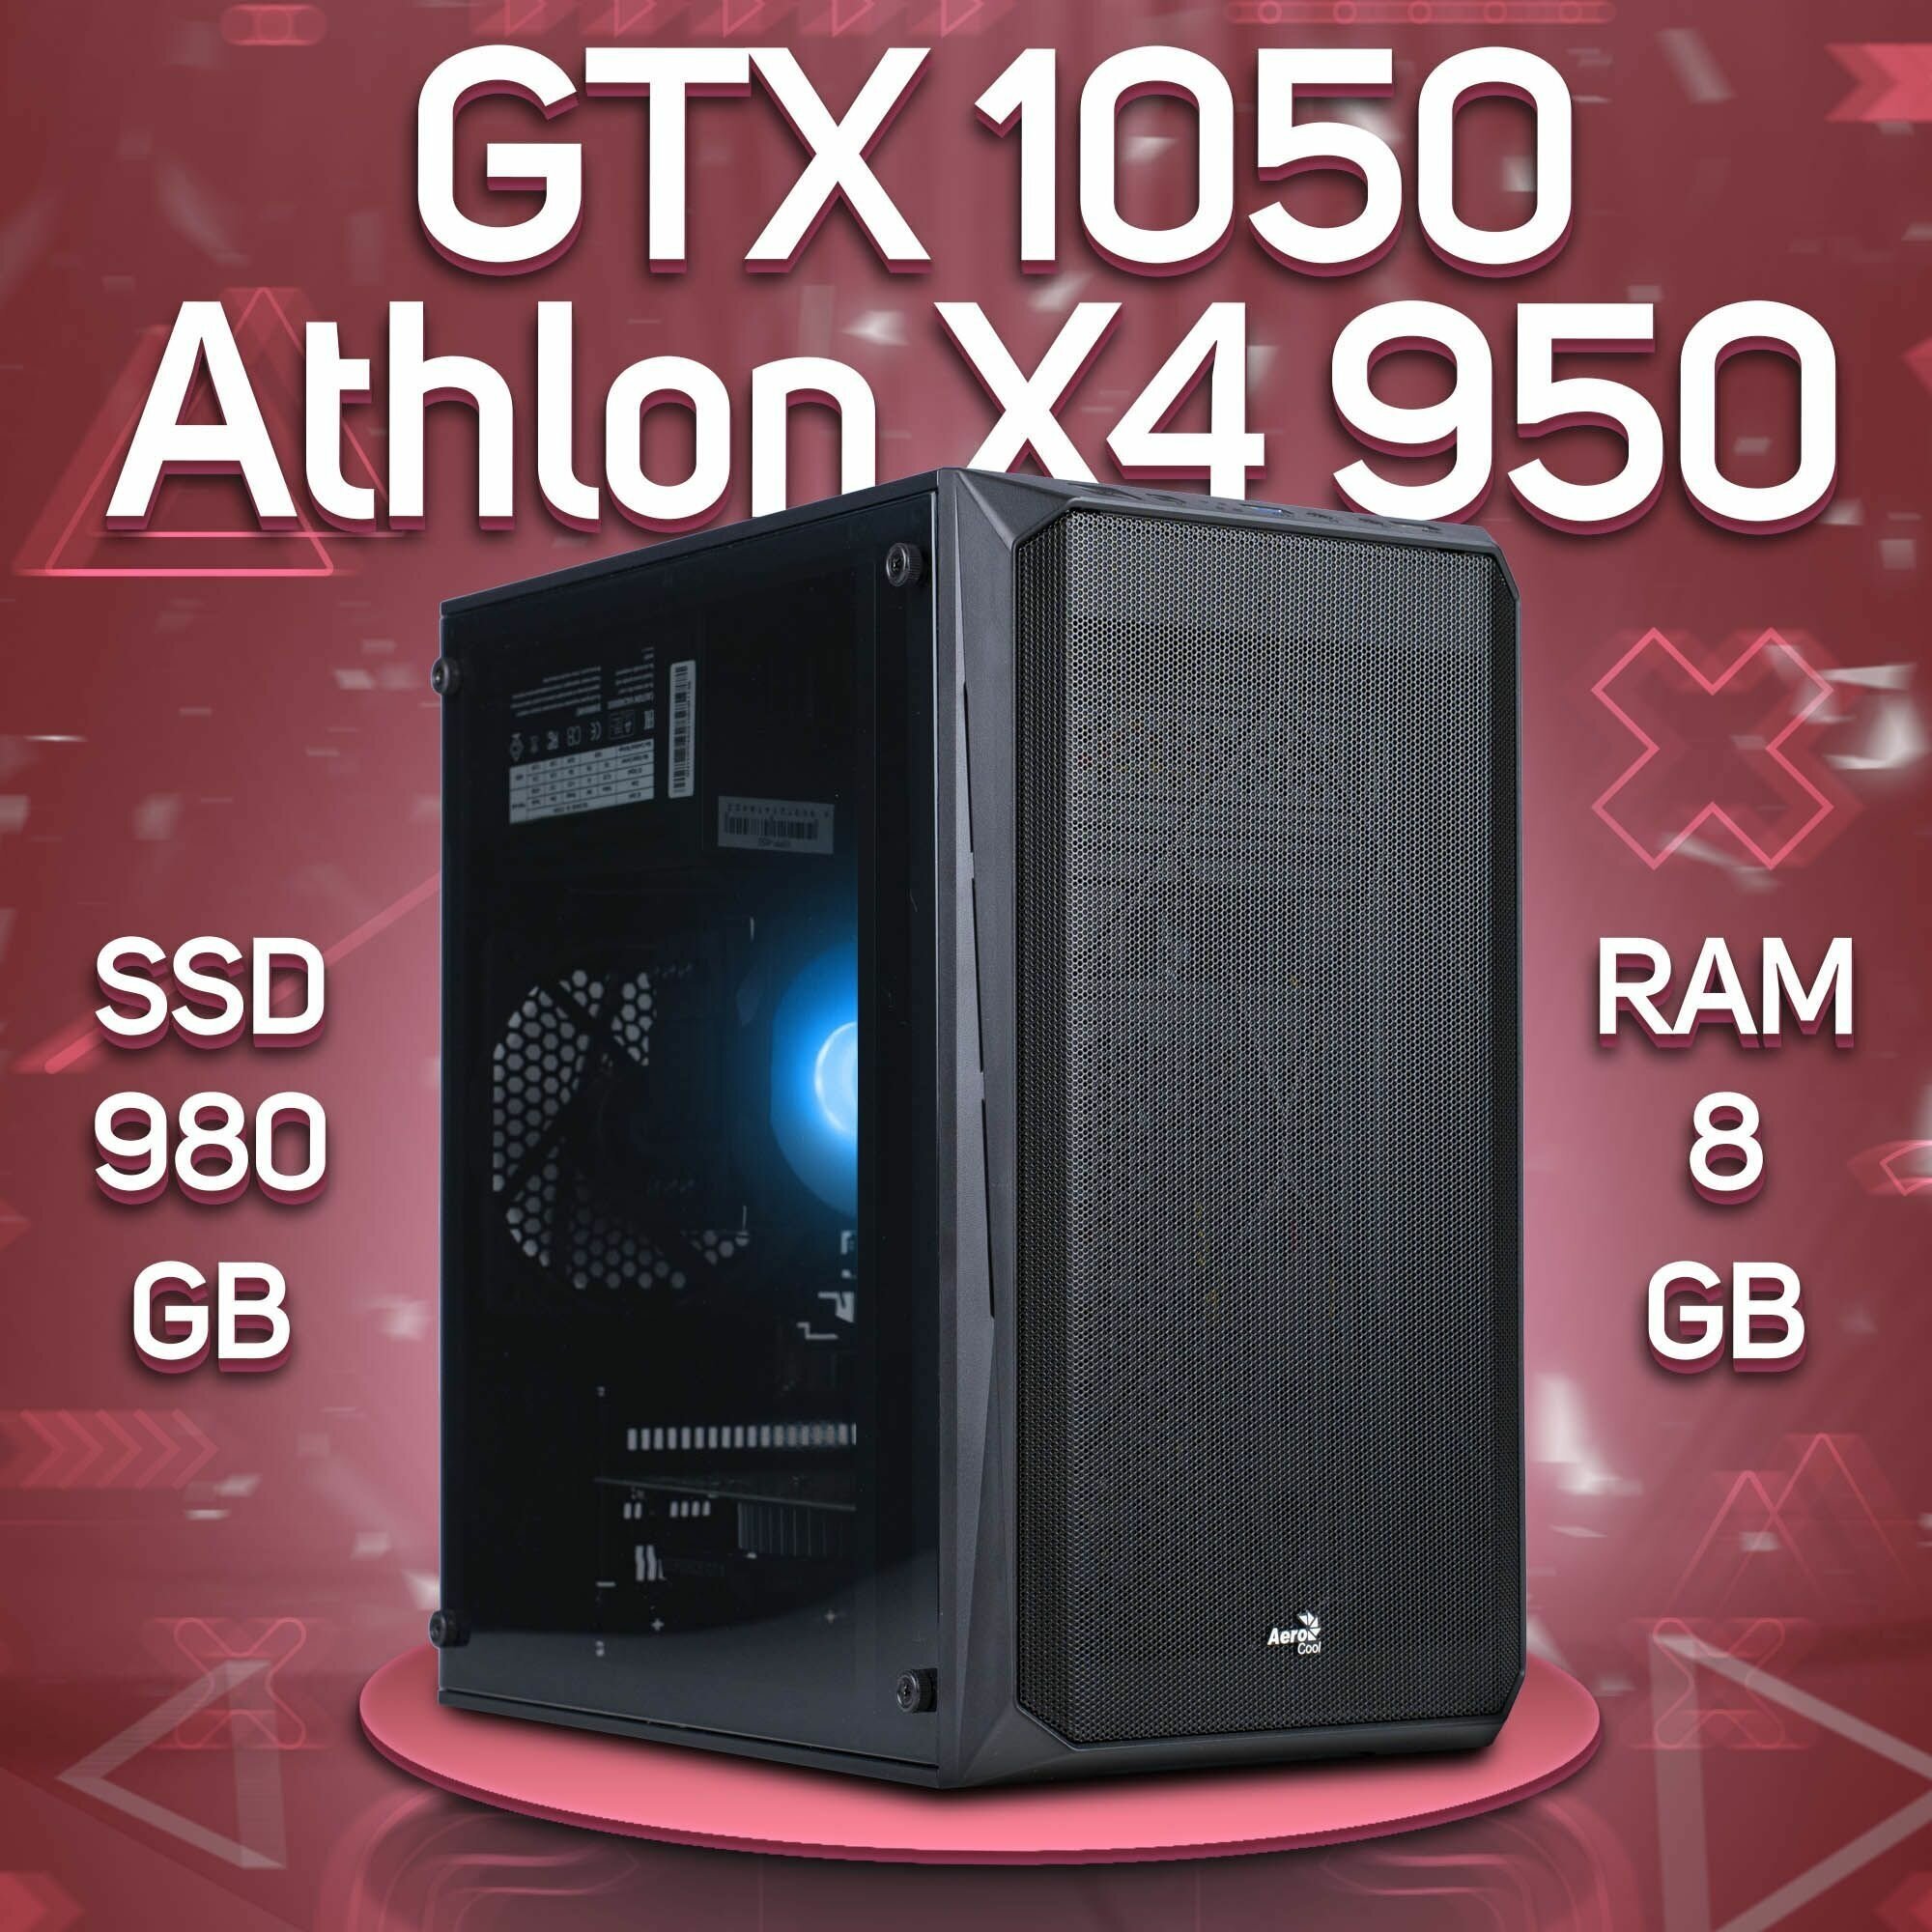 Компьютер AMD Athlon X4 950, NVIDIA GeForce GTX 1050 (2 Гб), DDR4 8gb, SSD 980gb